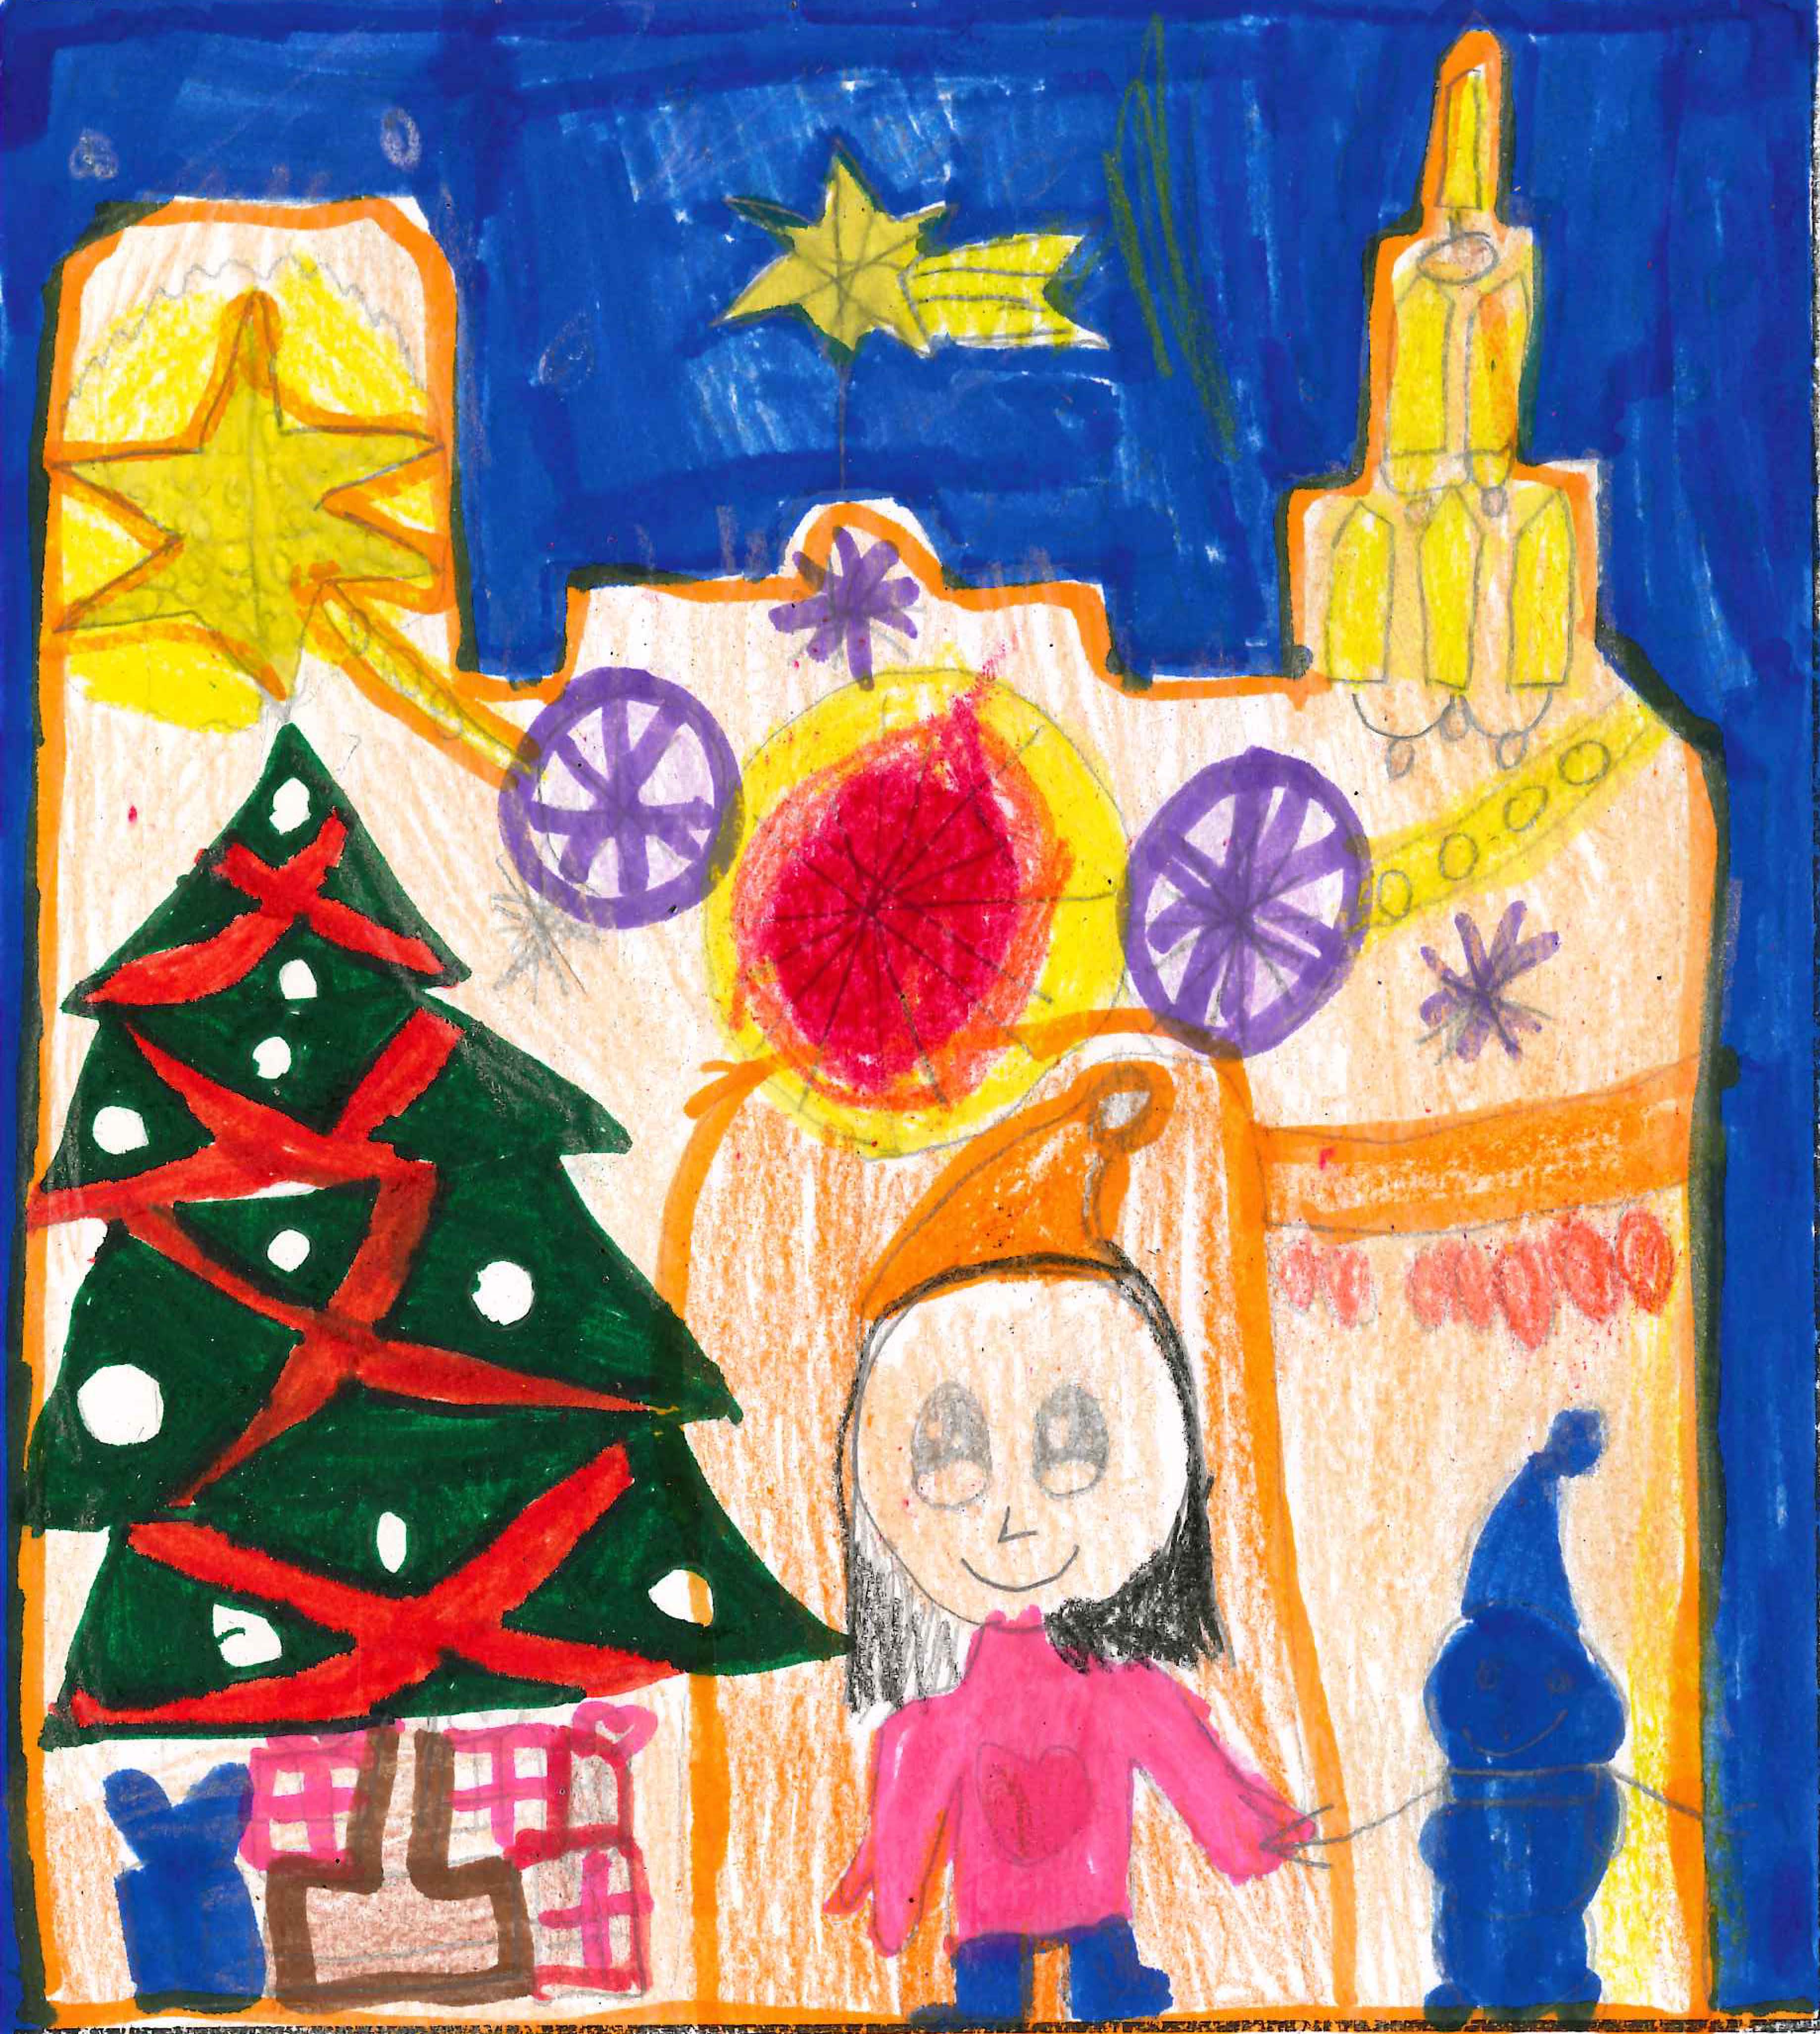 Les postals de Nadal de l'Escola Europa pel concurs del TOT 